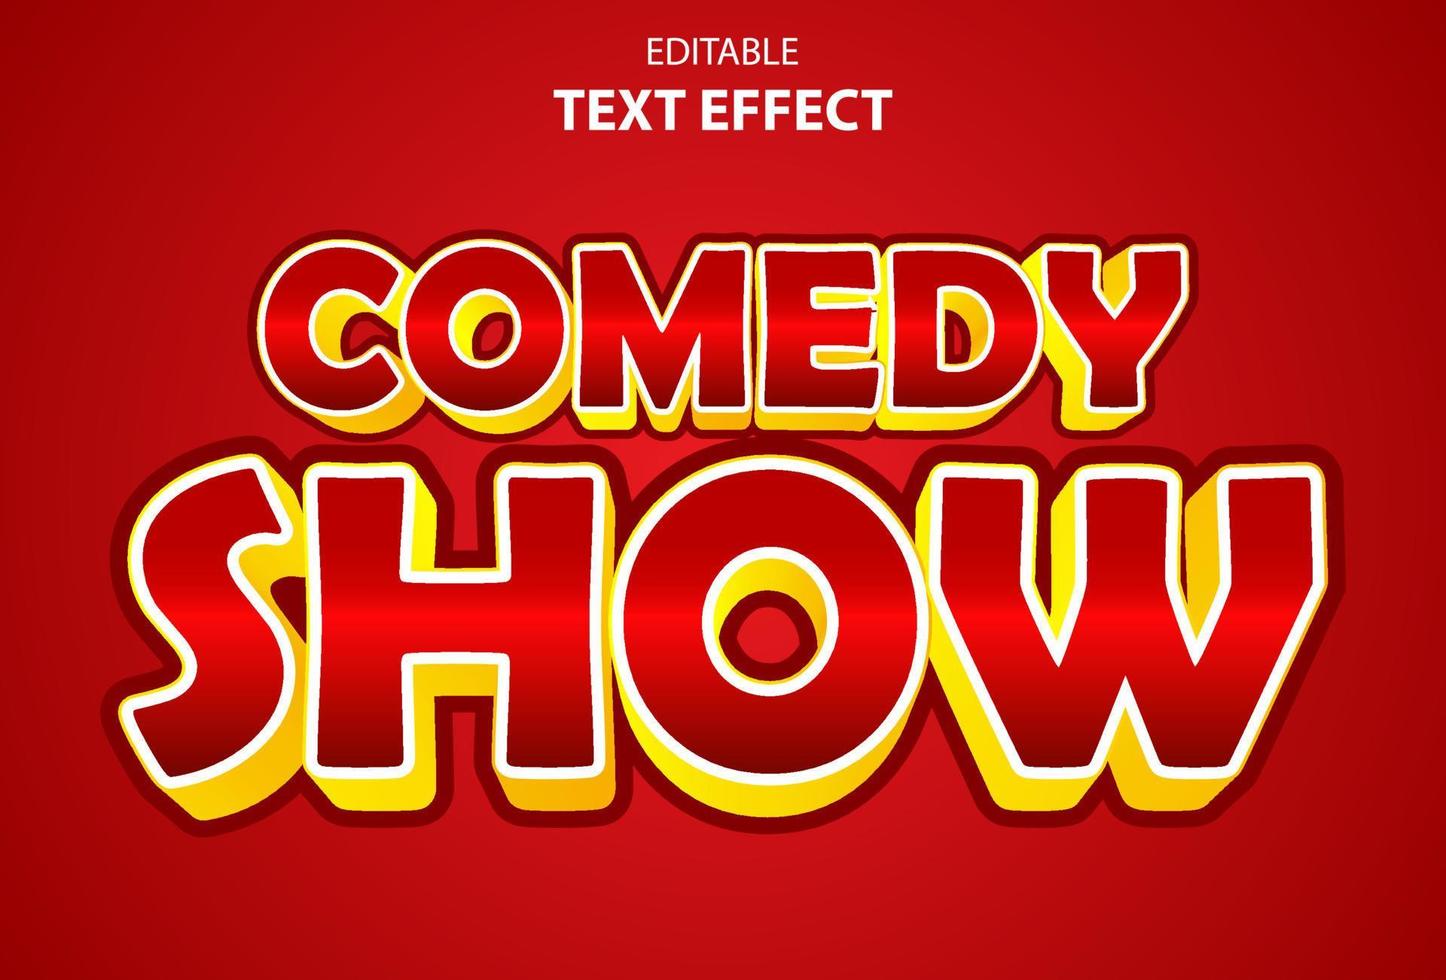 comedy show teksteffect in rode kleur bewerkbaar voor promotie. vector